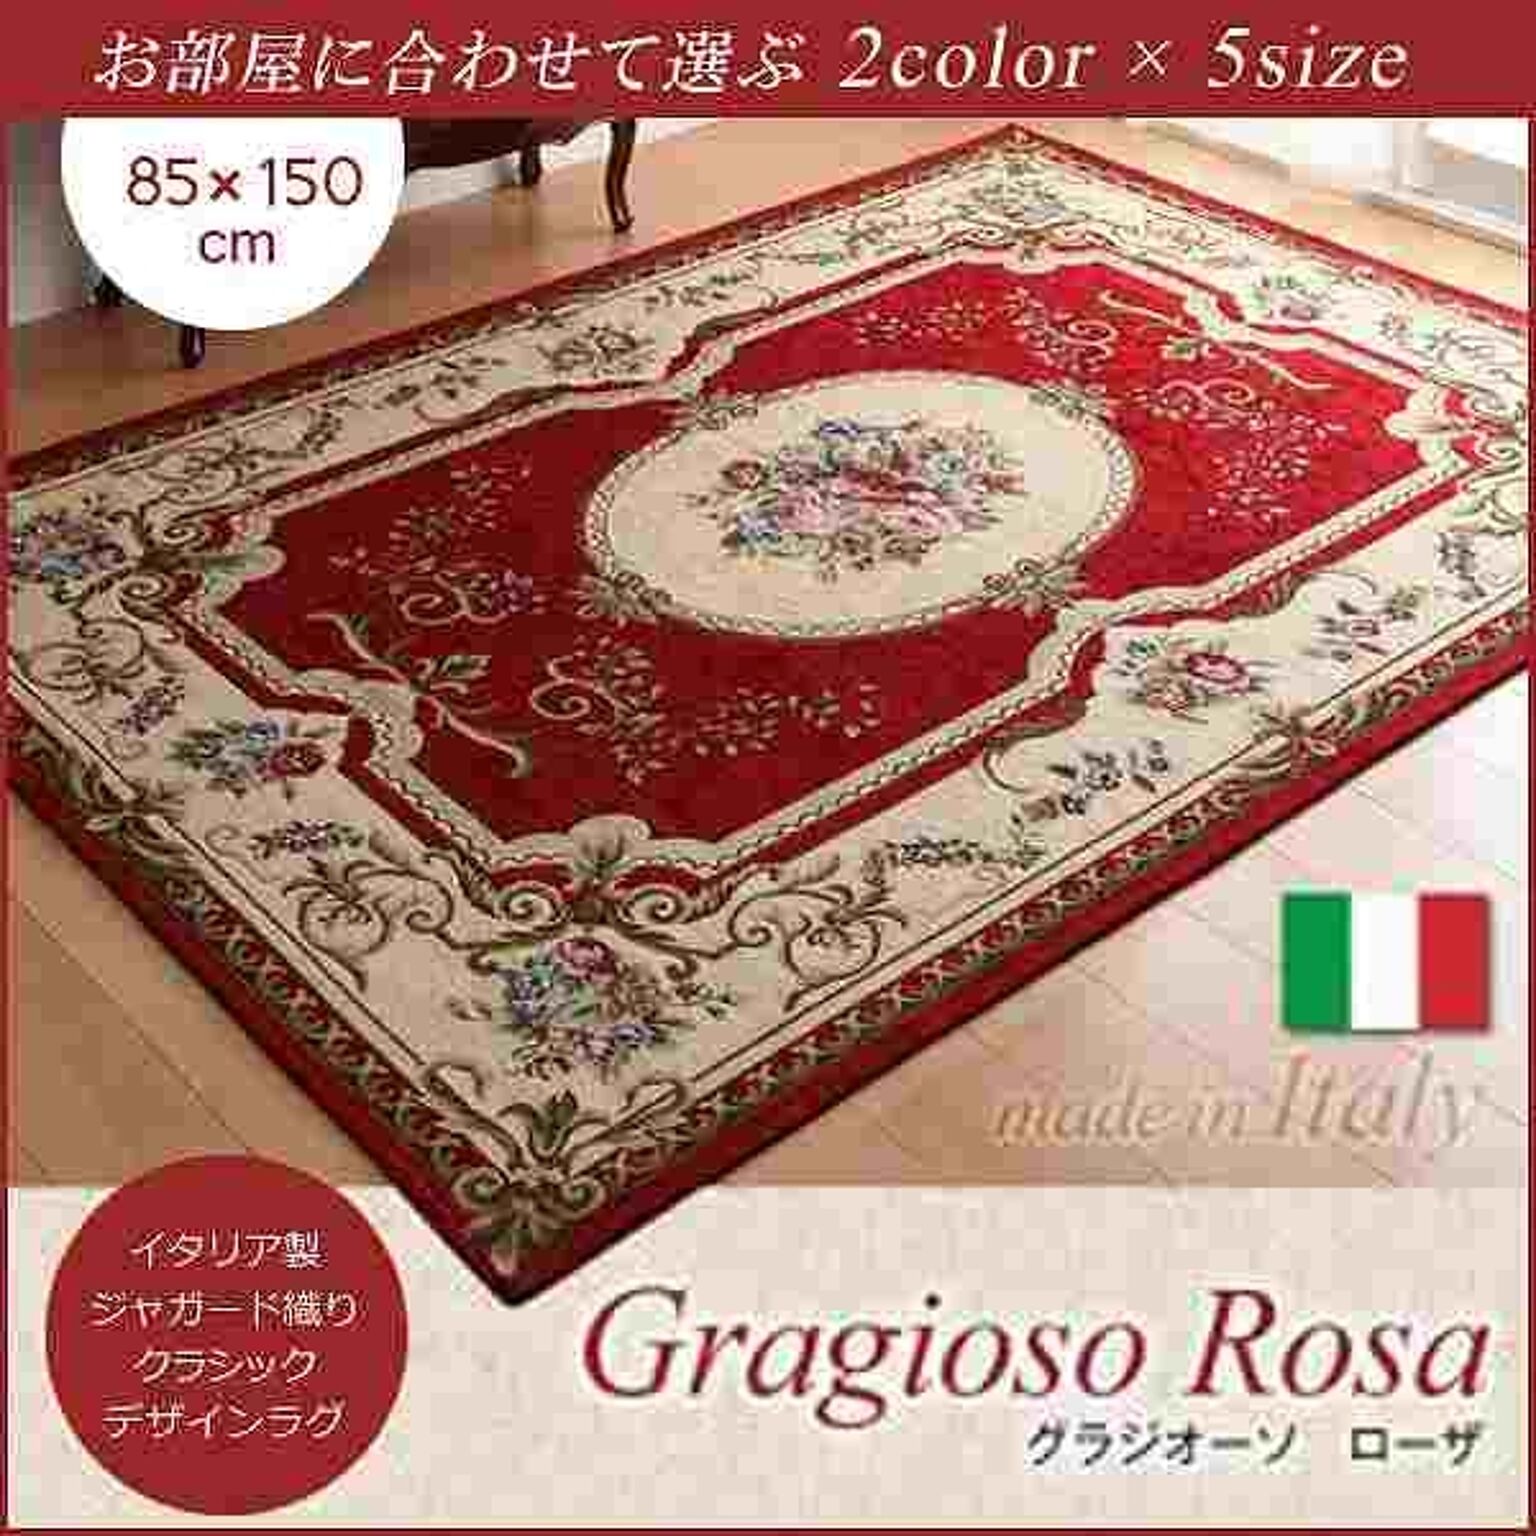 イタリア製ジャガード織りクラシックデザインラグ【Gragioso★Rosa】グラジオーソ★ローザ★85×150cm★レッド